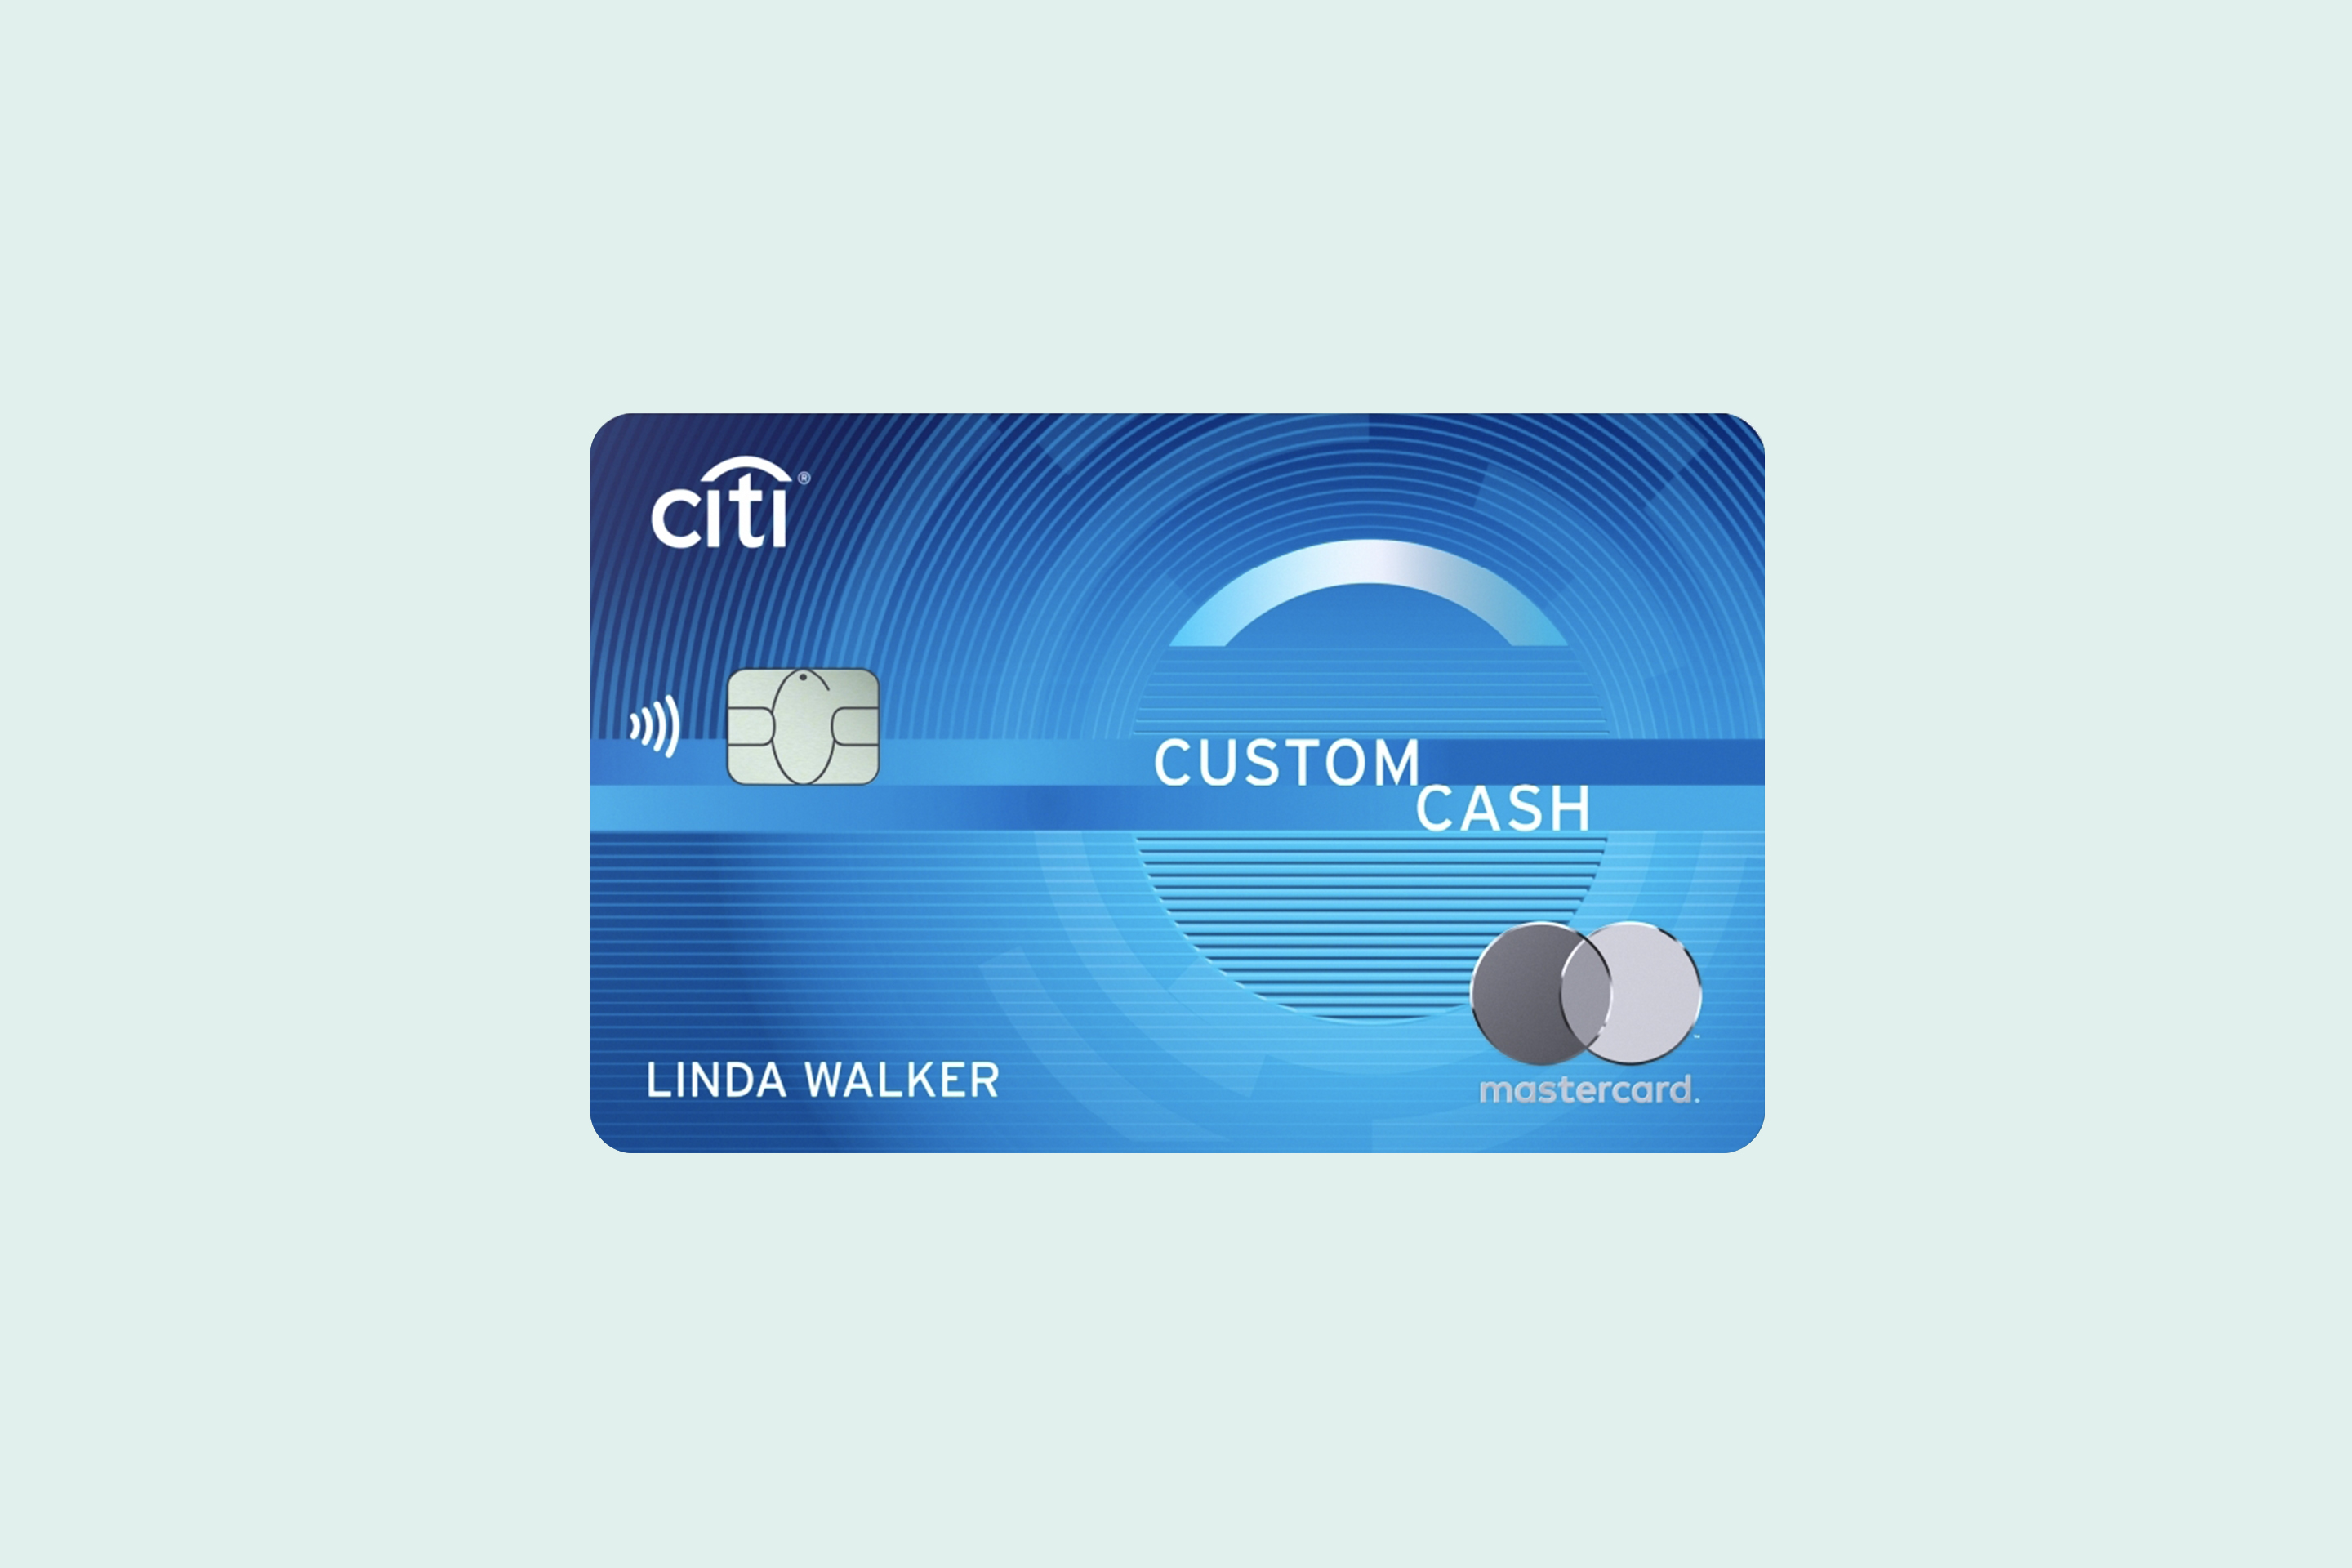 Cash back credit cards, Up to 5% in cash rewards